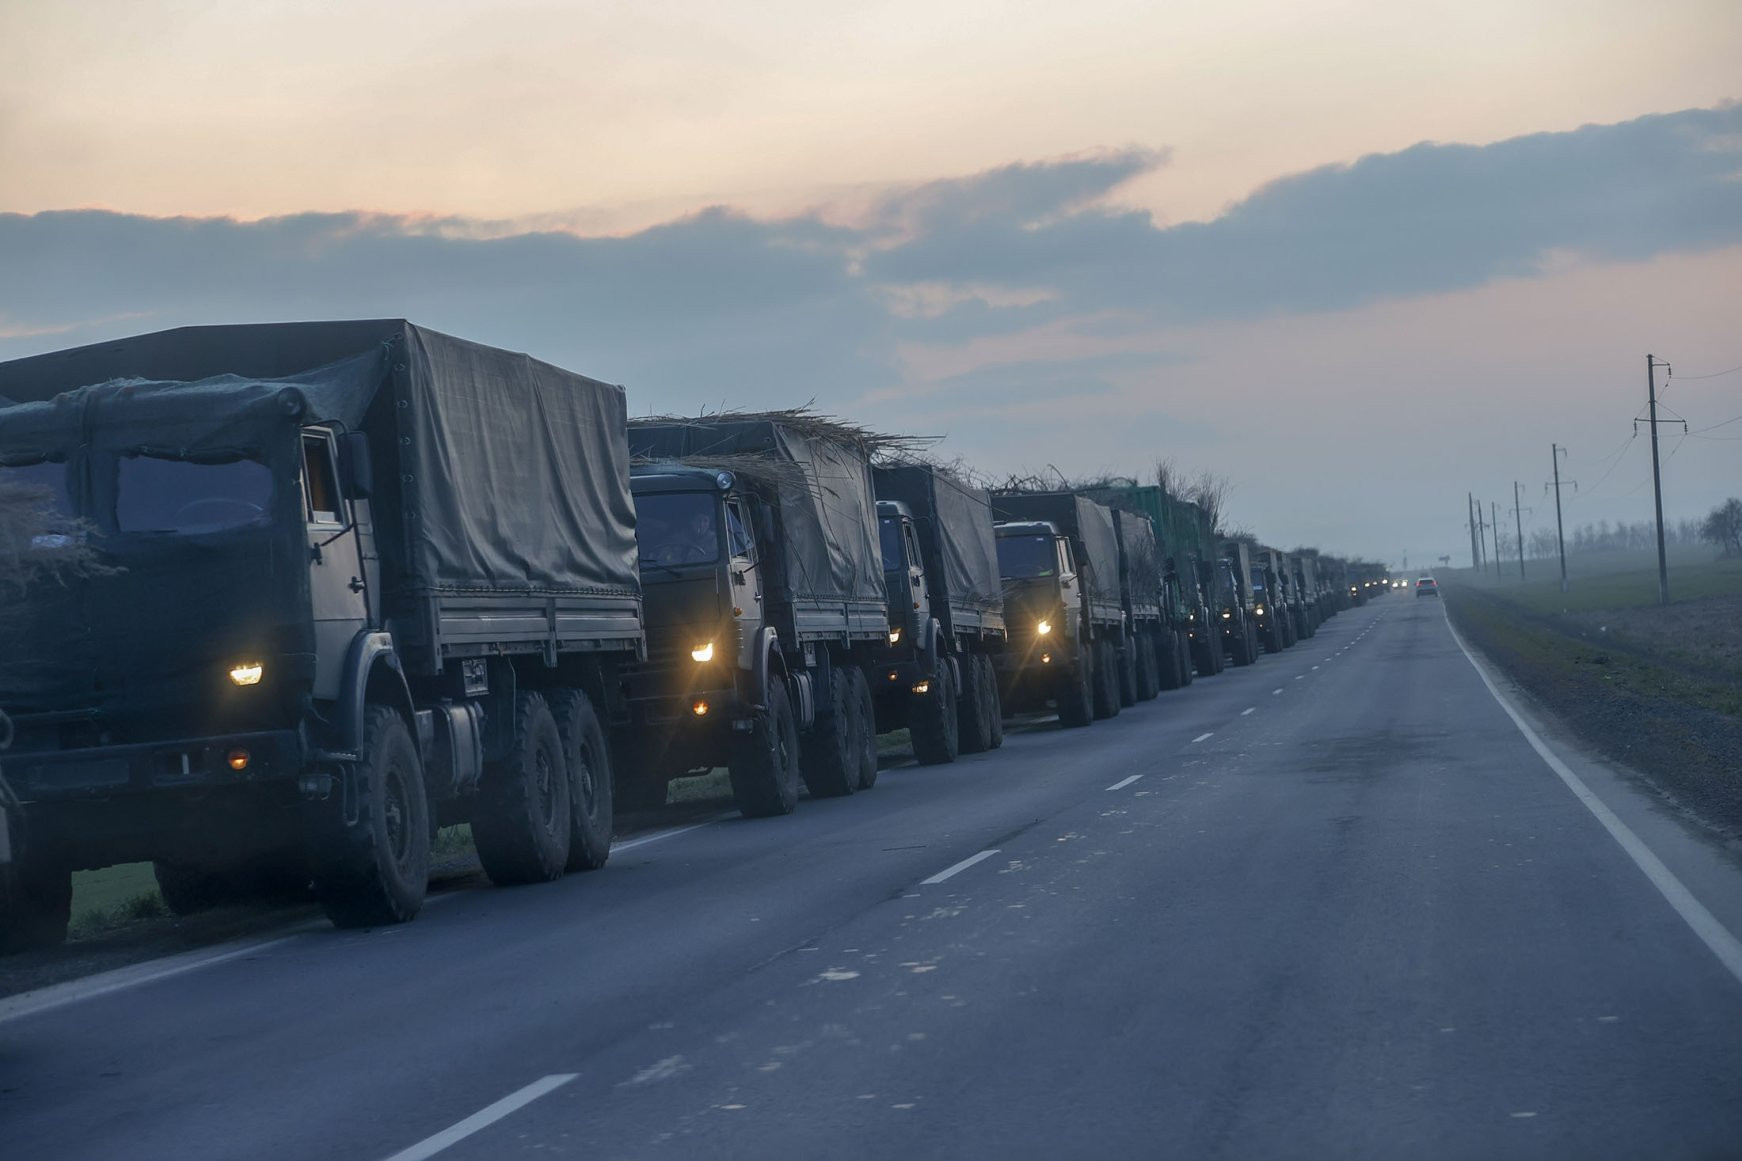 Đoàn xe quân sự của Nga đang tiến về biên giới vào vùng Donbass, miền đông Ukraine, ở thành phố biên giới Rostov của Nga. Ảnh: Daily Sabah.